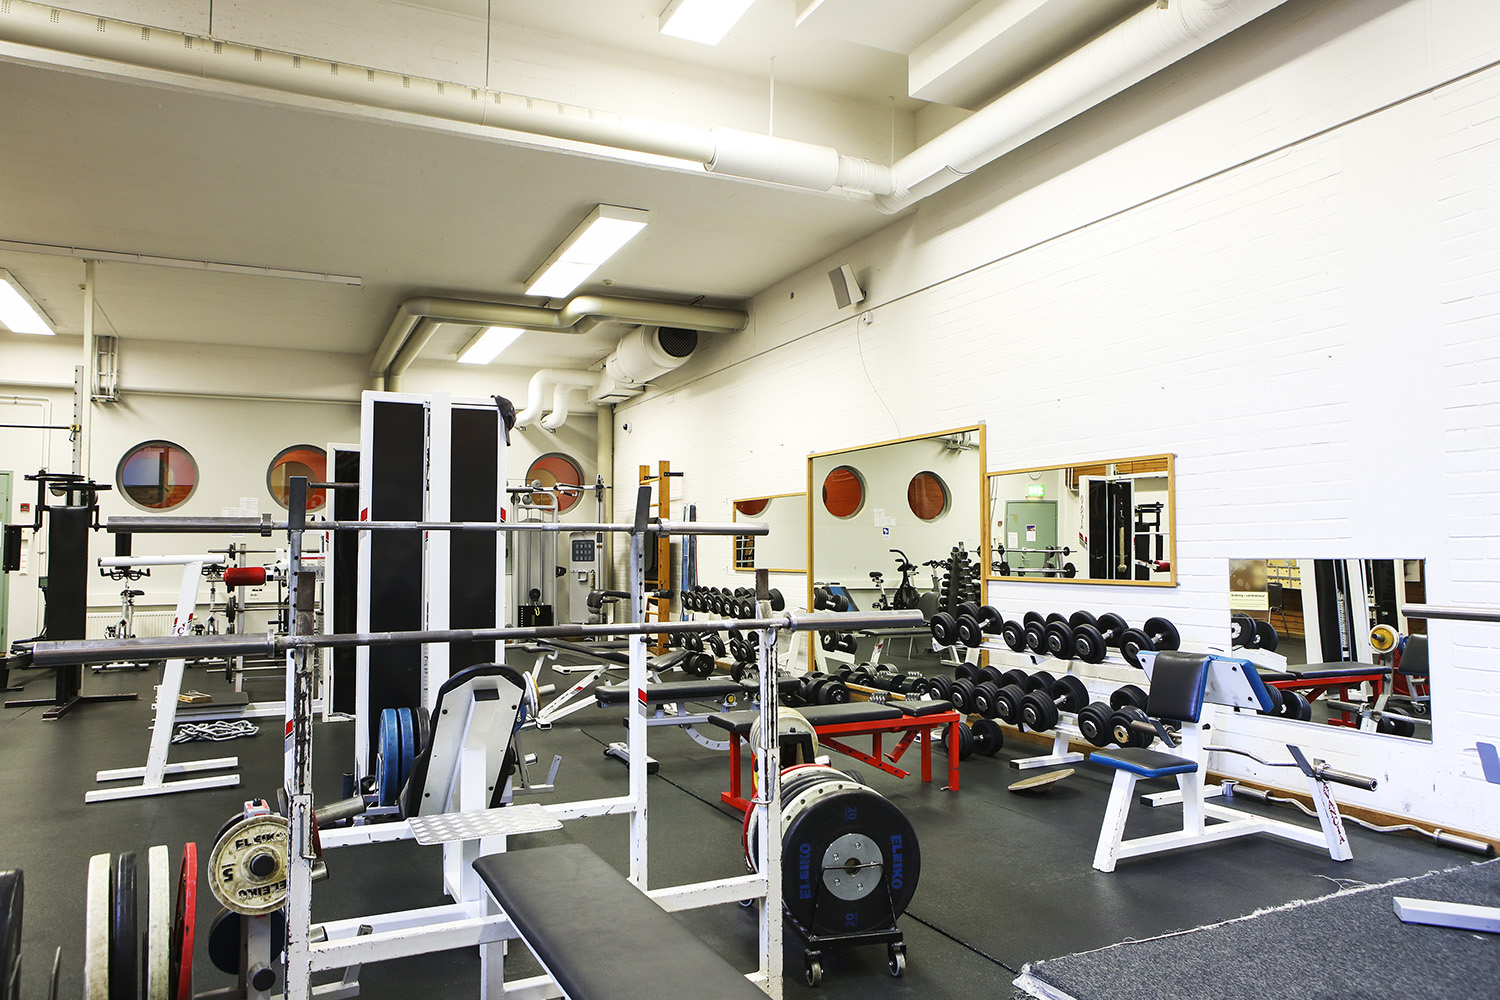 Många olika utrustningar och maskiner i gymmet